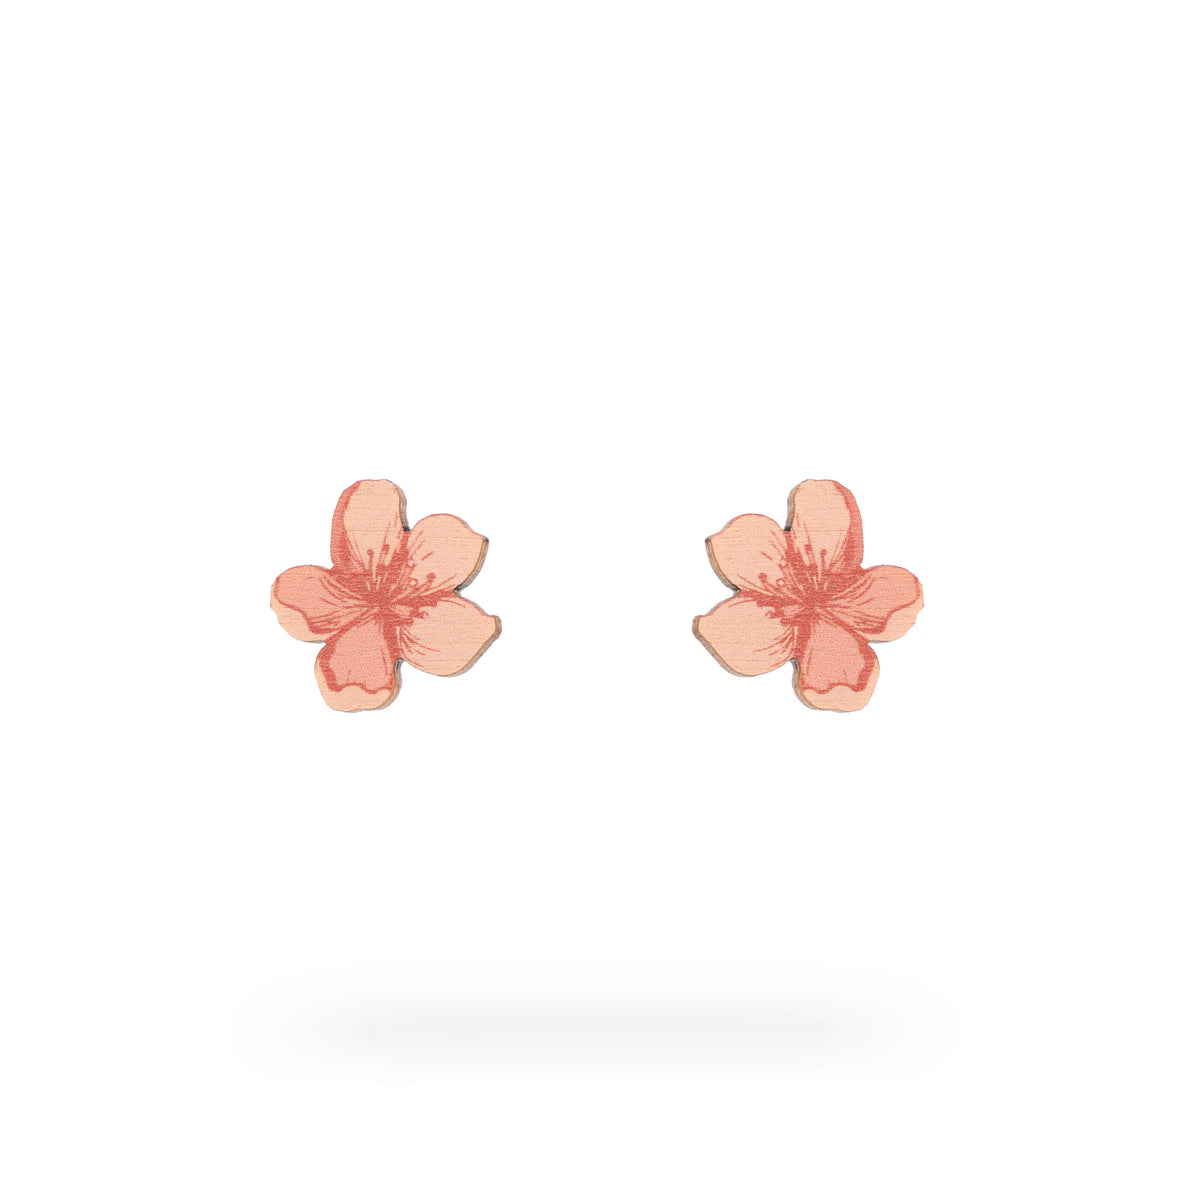 Sakura Blossoms -korussa kaunis kirsikankukka leijailee kevyesti. Tämä yksittäinen kukka heijastaa kauneutta ja herkkyyttä yksinkertaisessa ja elegantissa muodossa. Korun ilmava design ja sakurankukka luovat tunnelman suloisesta kauneudesta. Sakura Blossoms -korvakoru on valmistettu Suomessa.